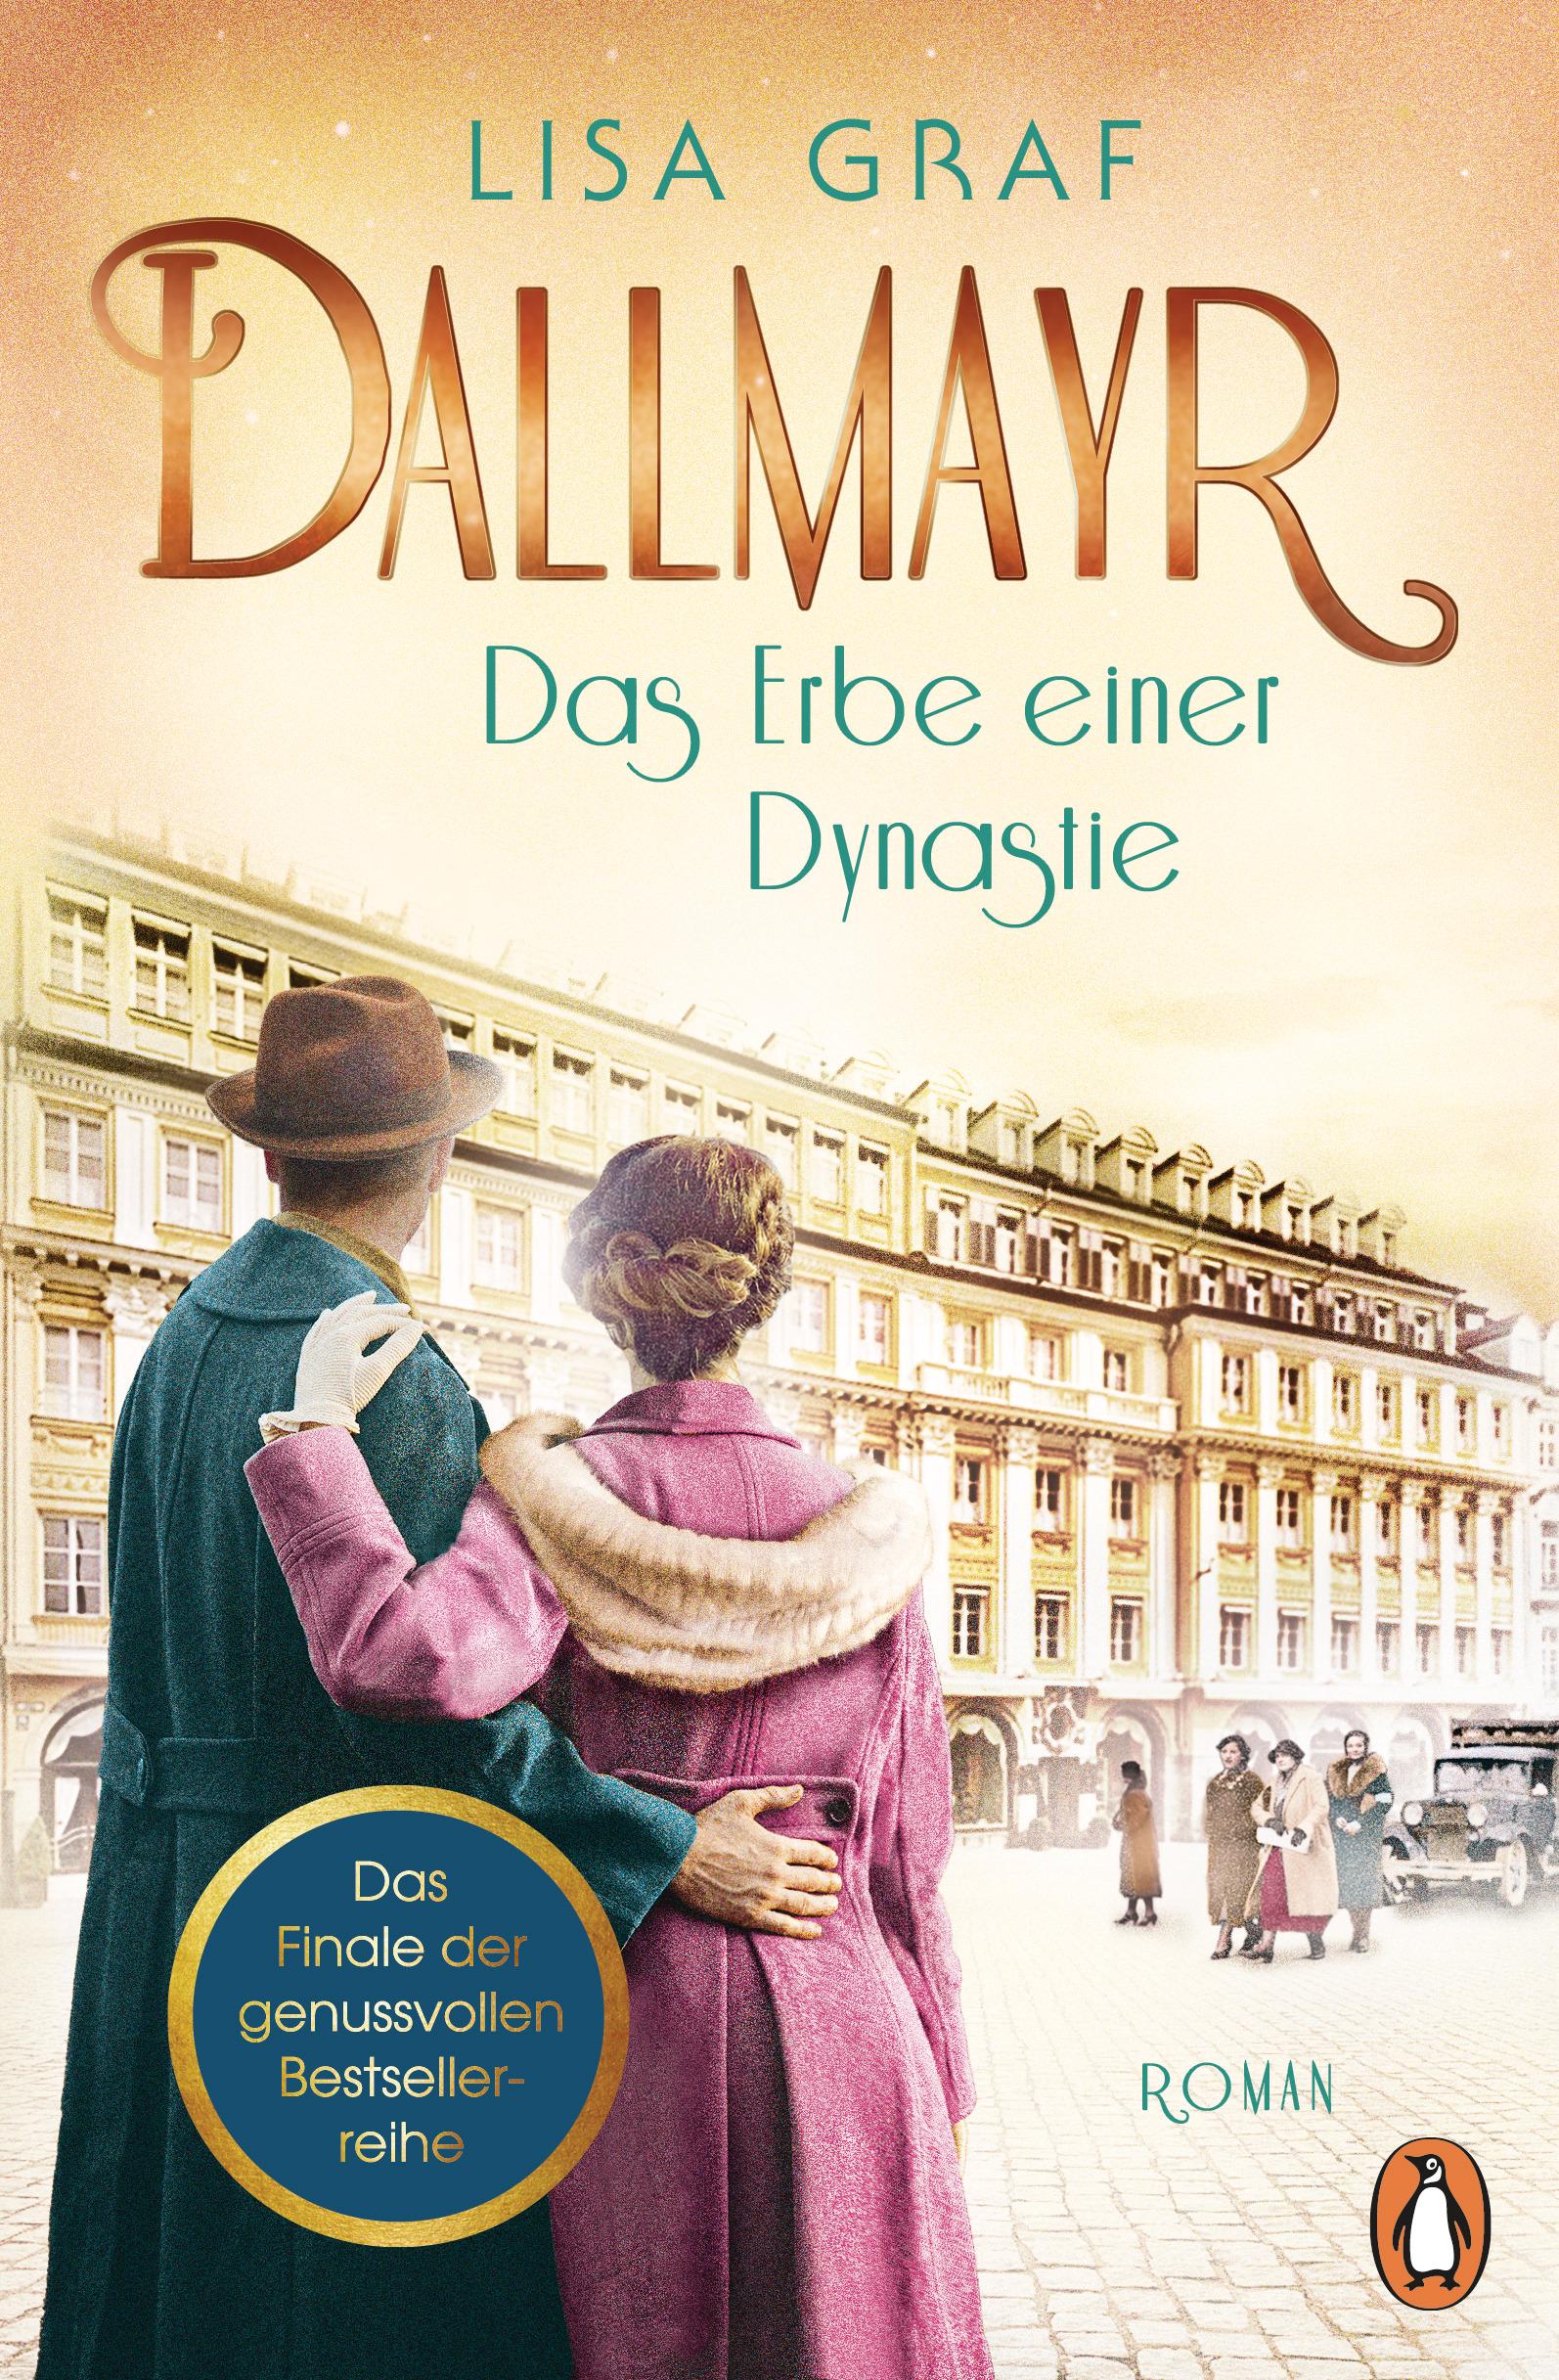 Dallmayr. Das Erbe einer Dynastie